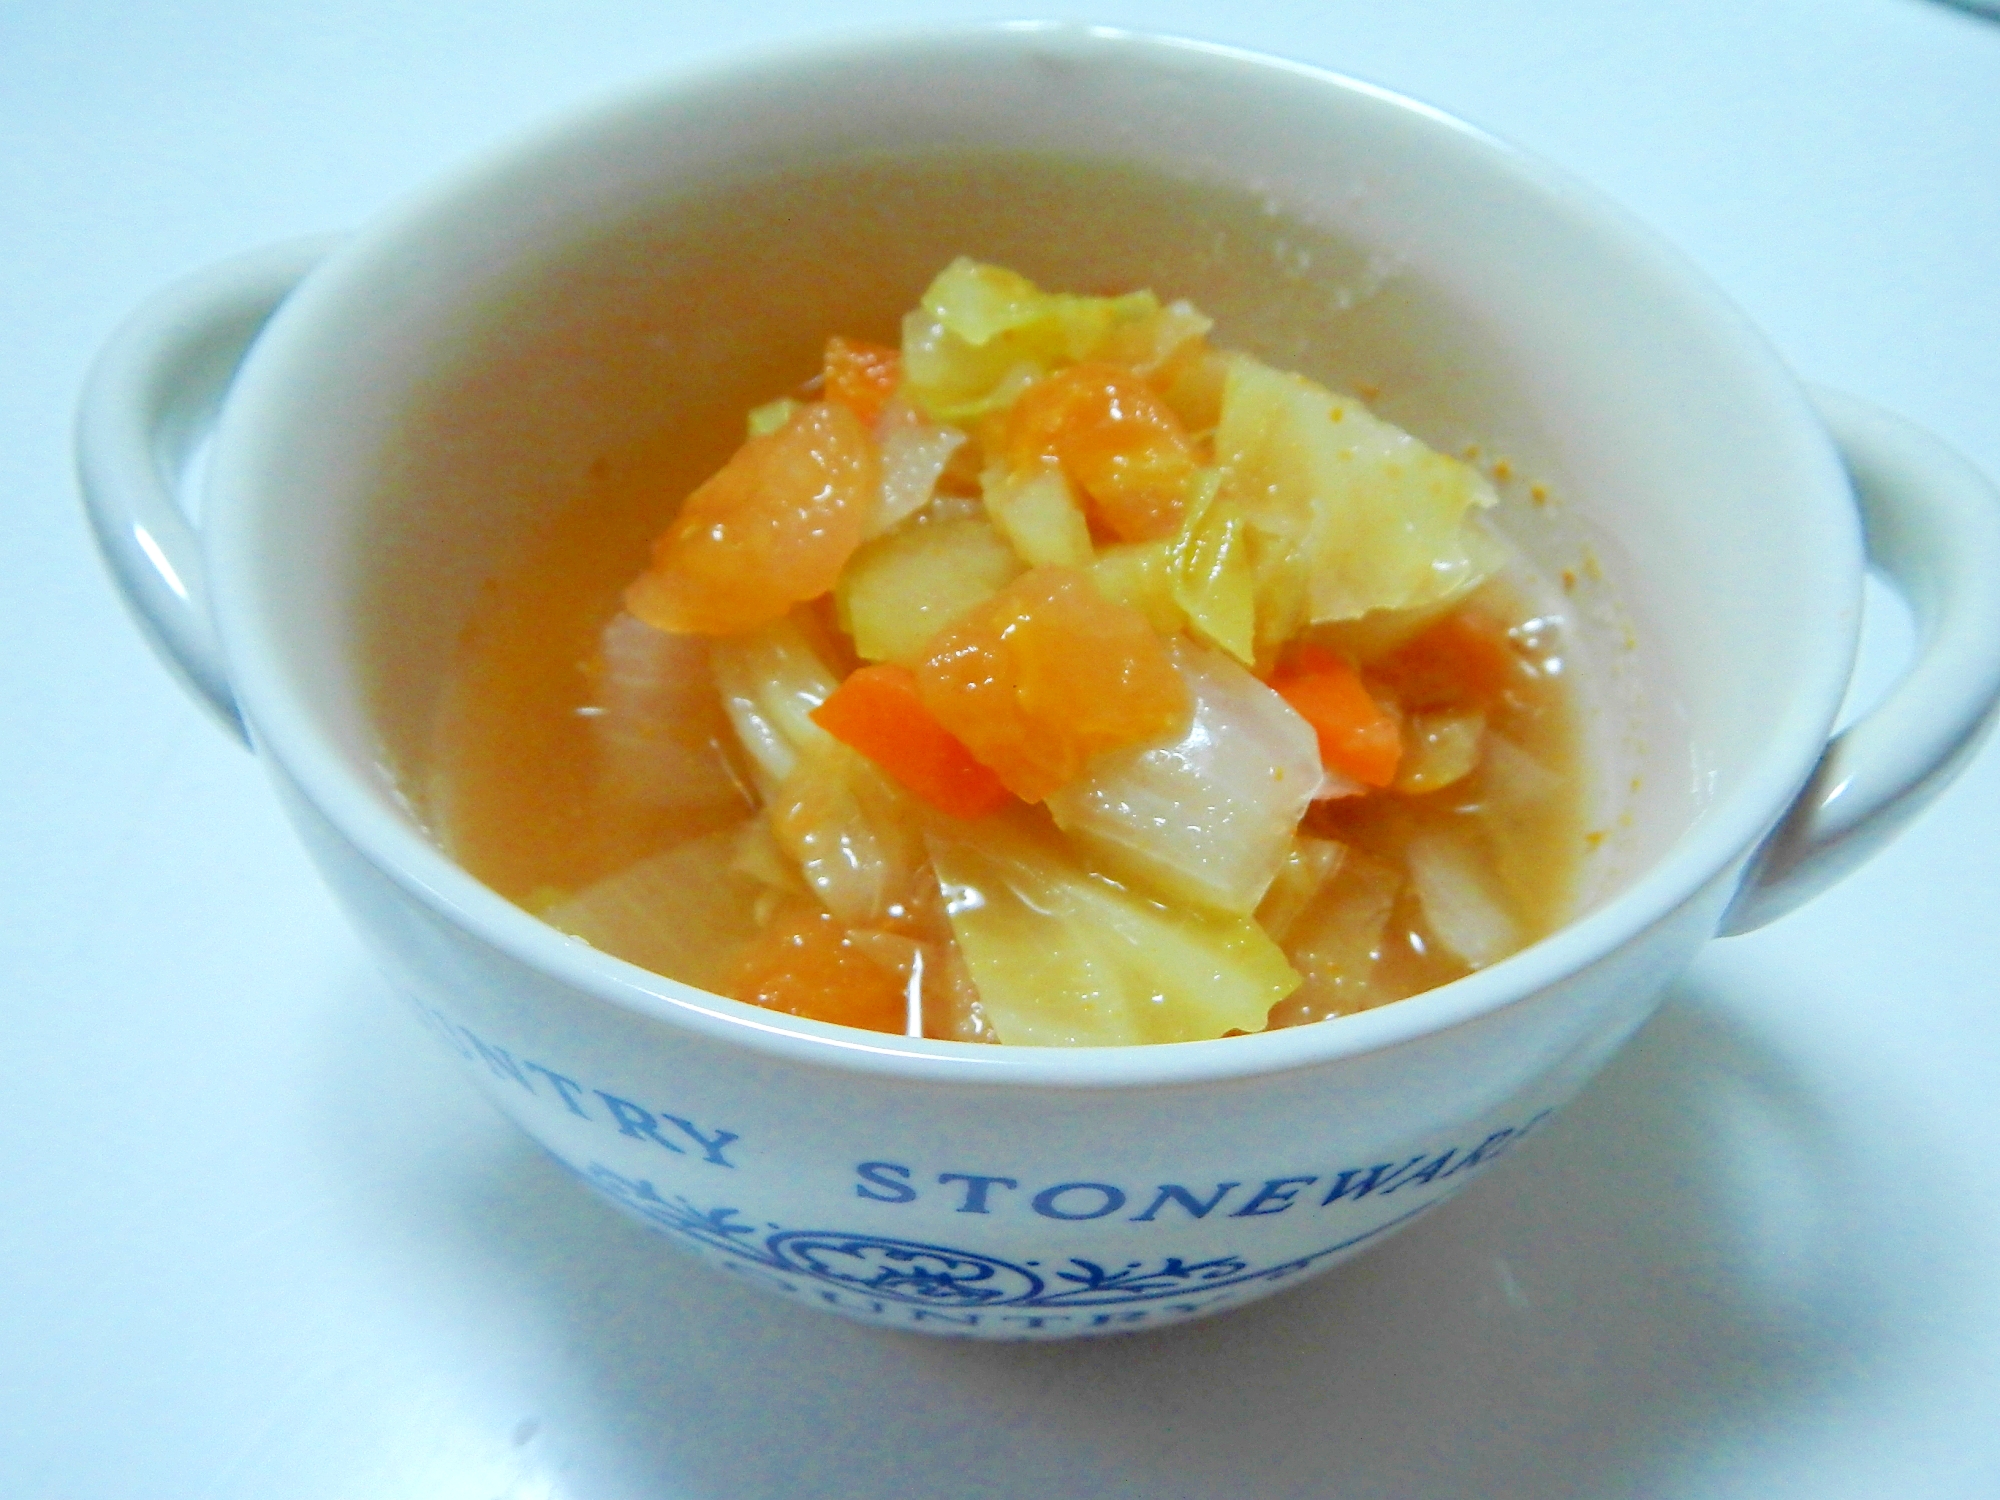 ヘルシー野菜スープ